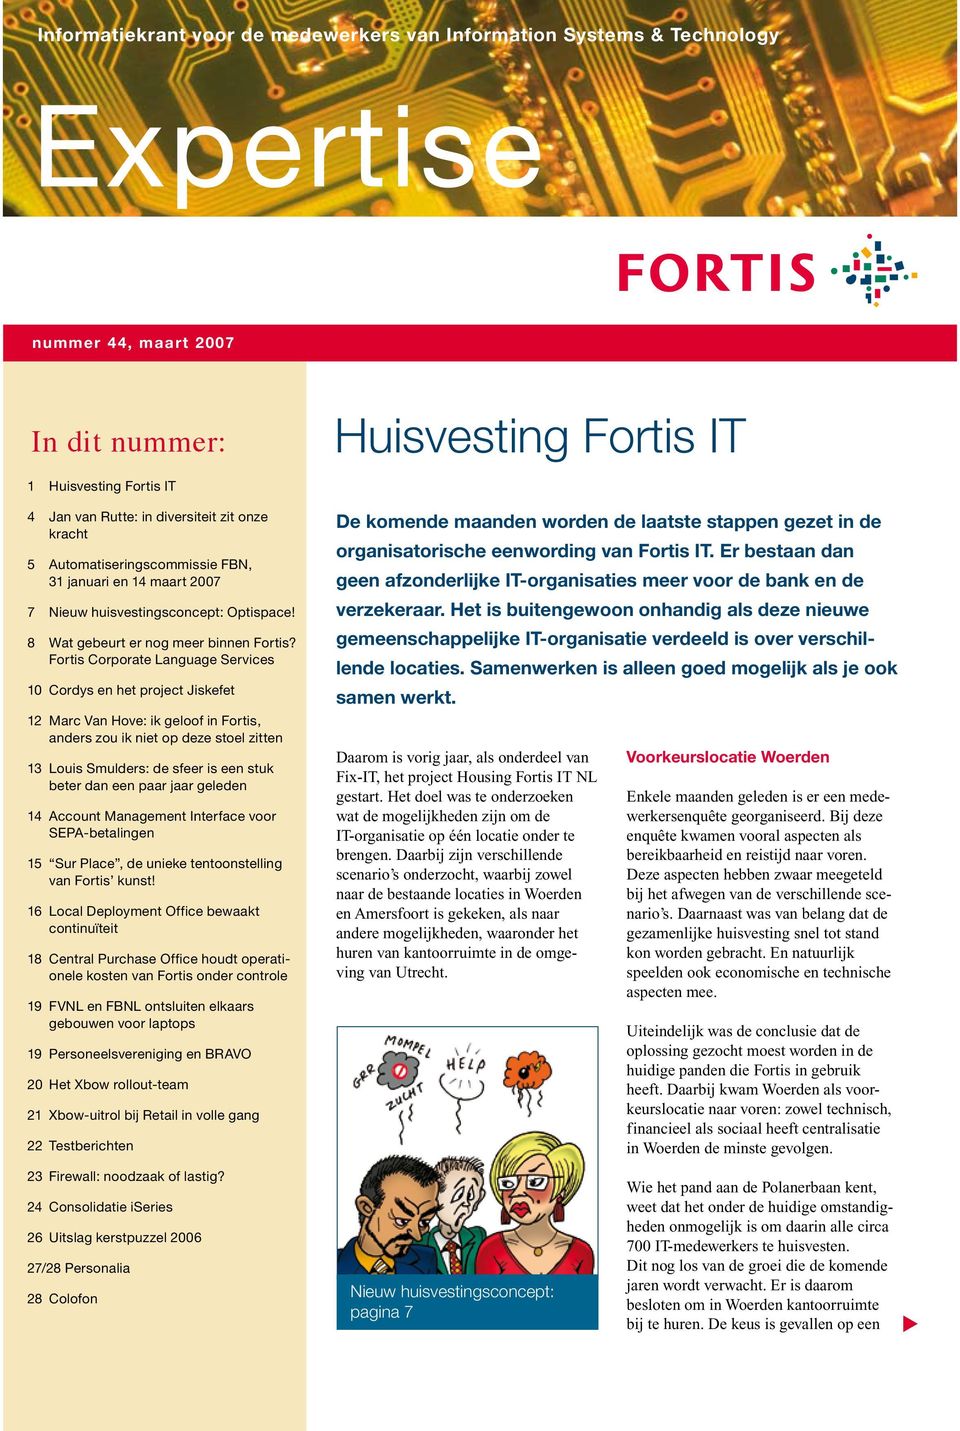 Fortis Corporate Language Services 10 Cordys en het project Jiskefet 12 Marc Van Hove: ik geloof in Fortis, anders zou ik niet op deze stoel zitten 13 Louis Smulders: de sfeer is een stuk beter dan